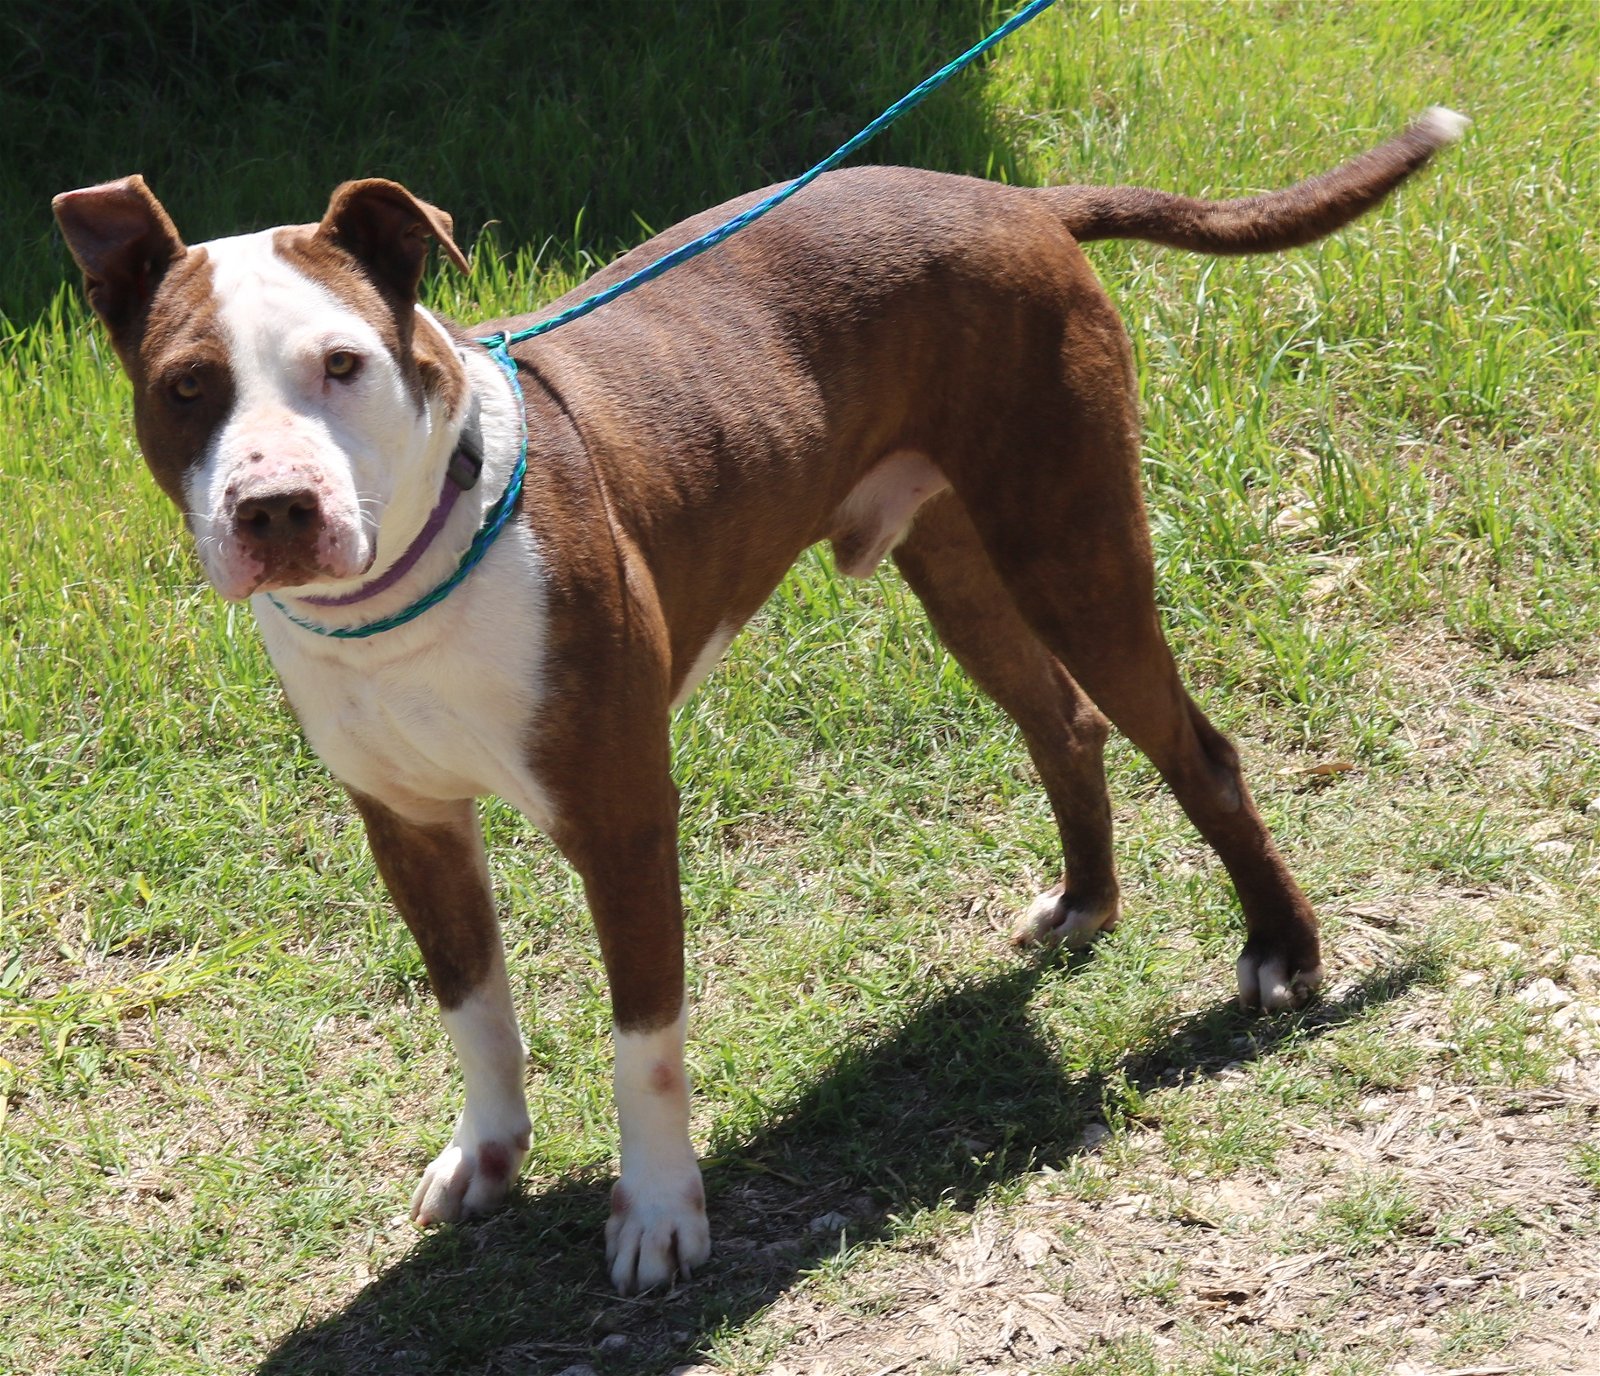 adoptable Dog in Brattleboro, VT named Dozer